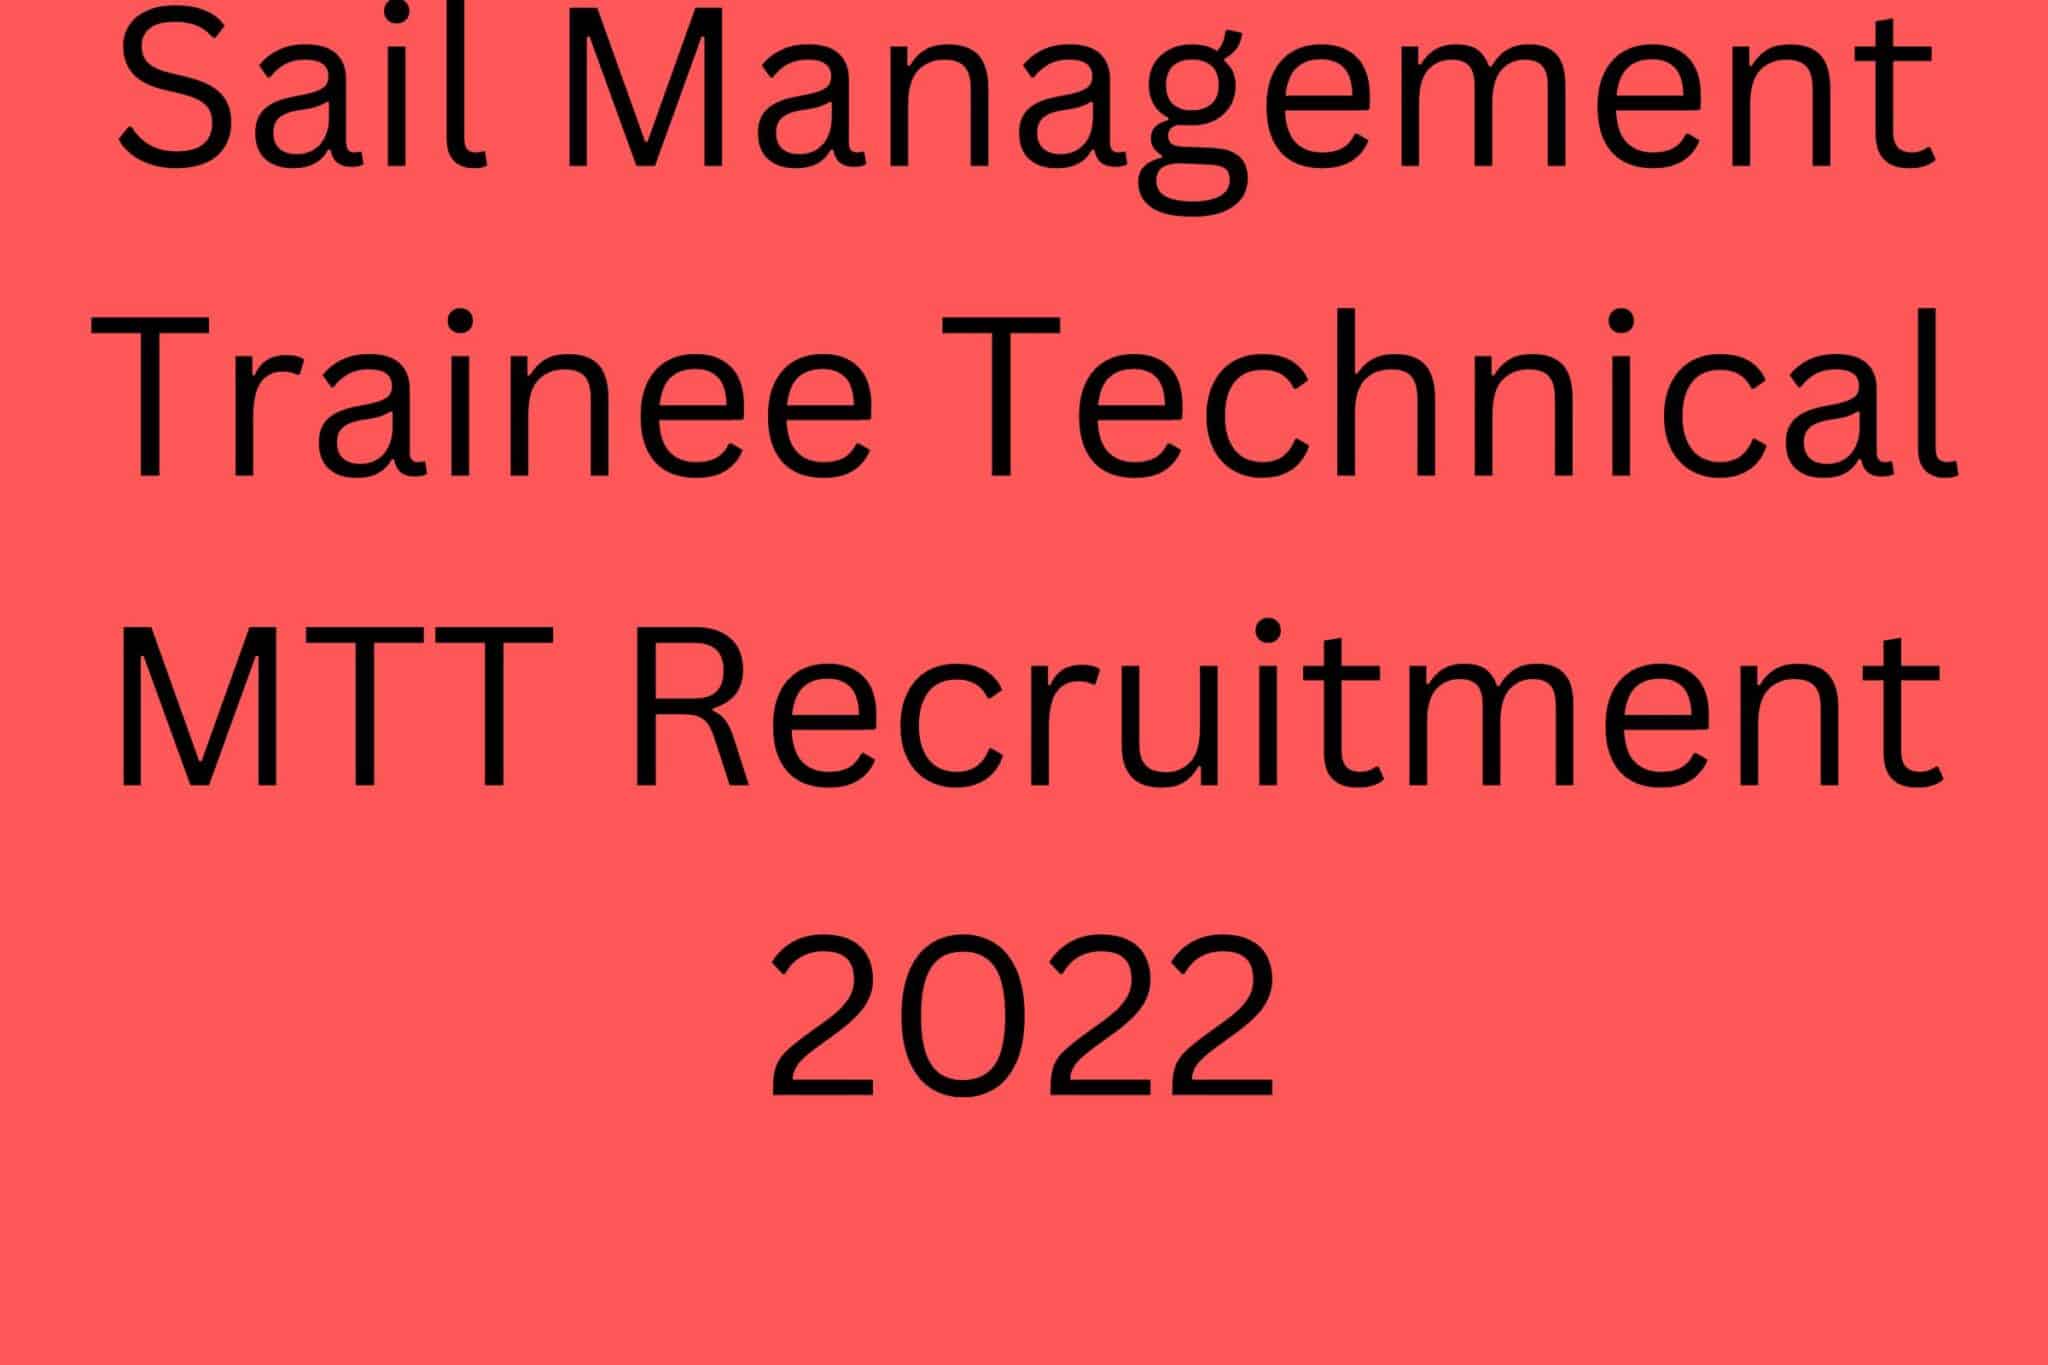 Sail Management Trainee Technical Mtt Recruitment 2022